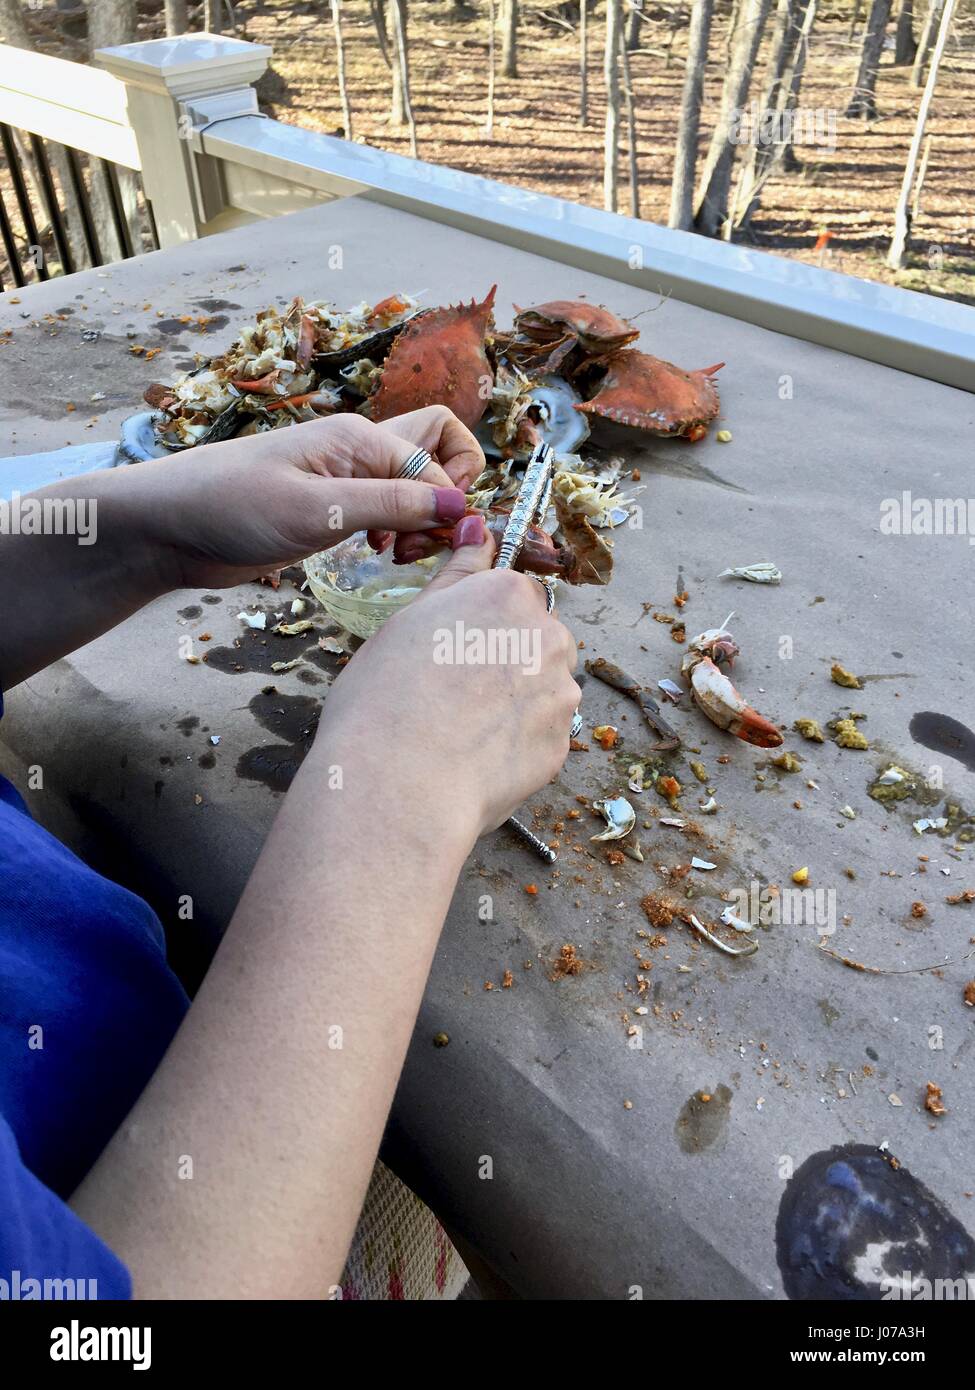 Übrig gebliebene Meeresfrüchte Muscheln nach ein Fest der blauen Krabben und Austern Stockfoto